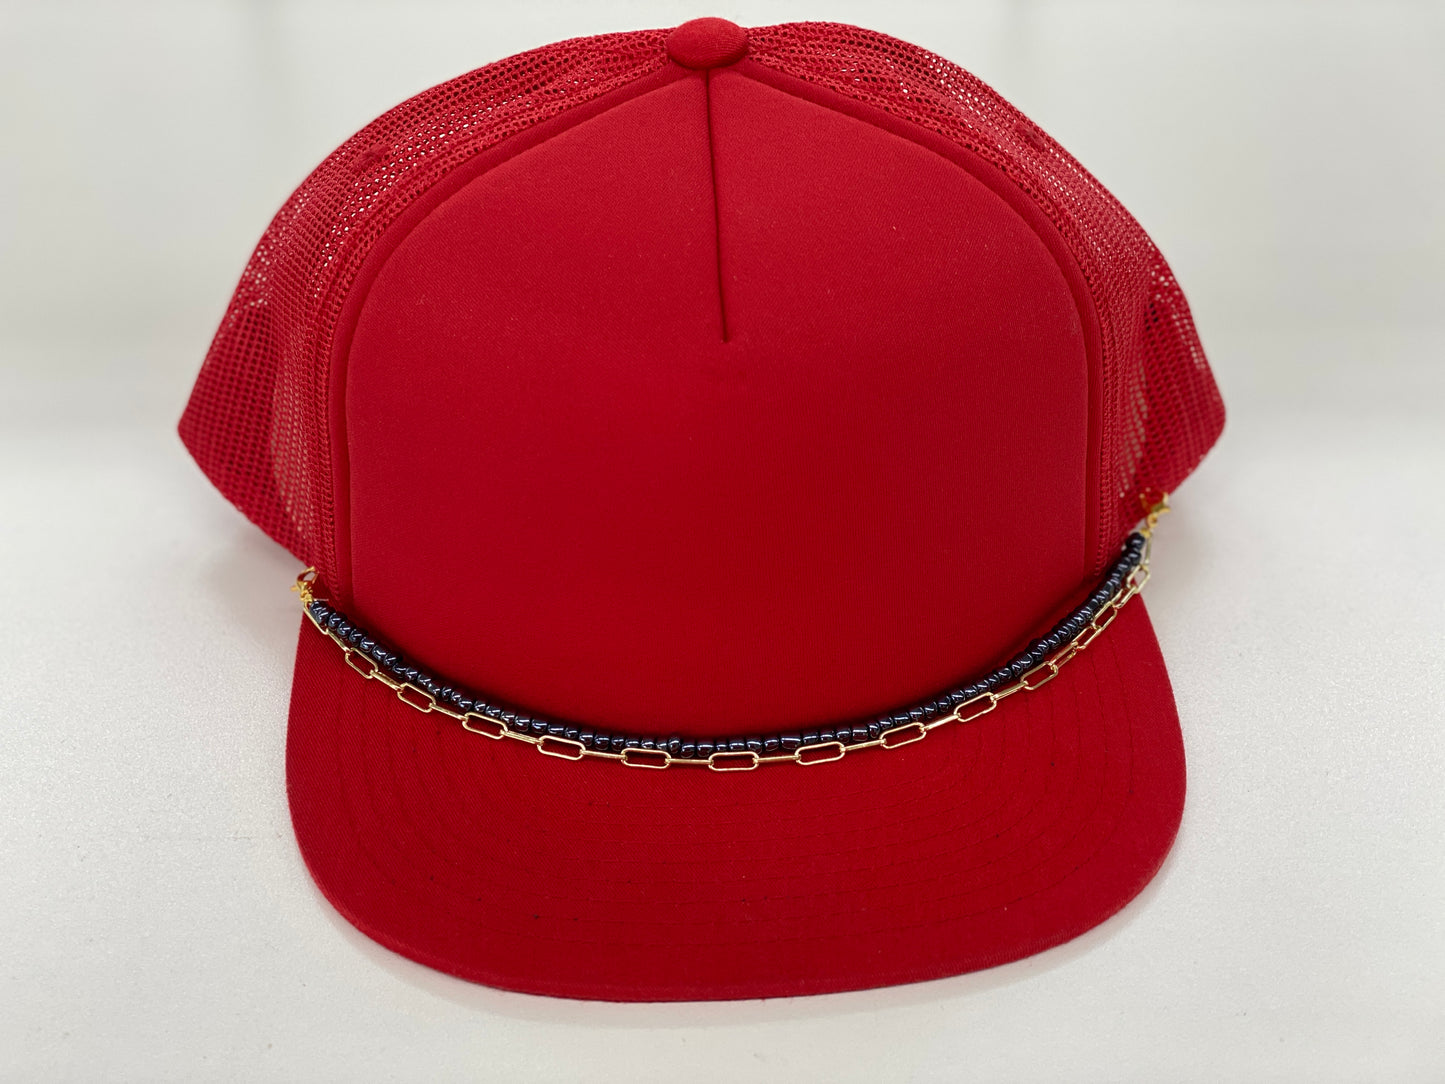 Trucker Hat Chains